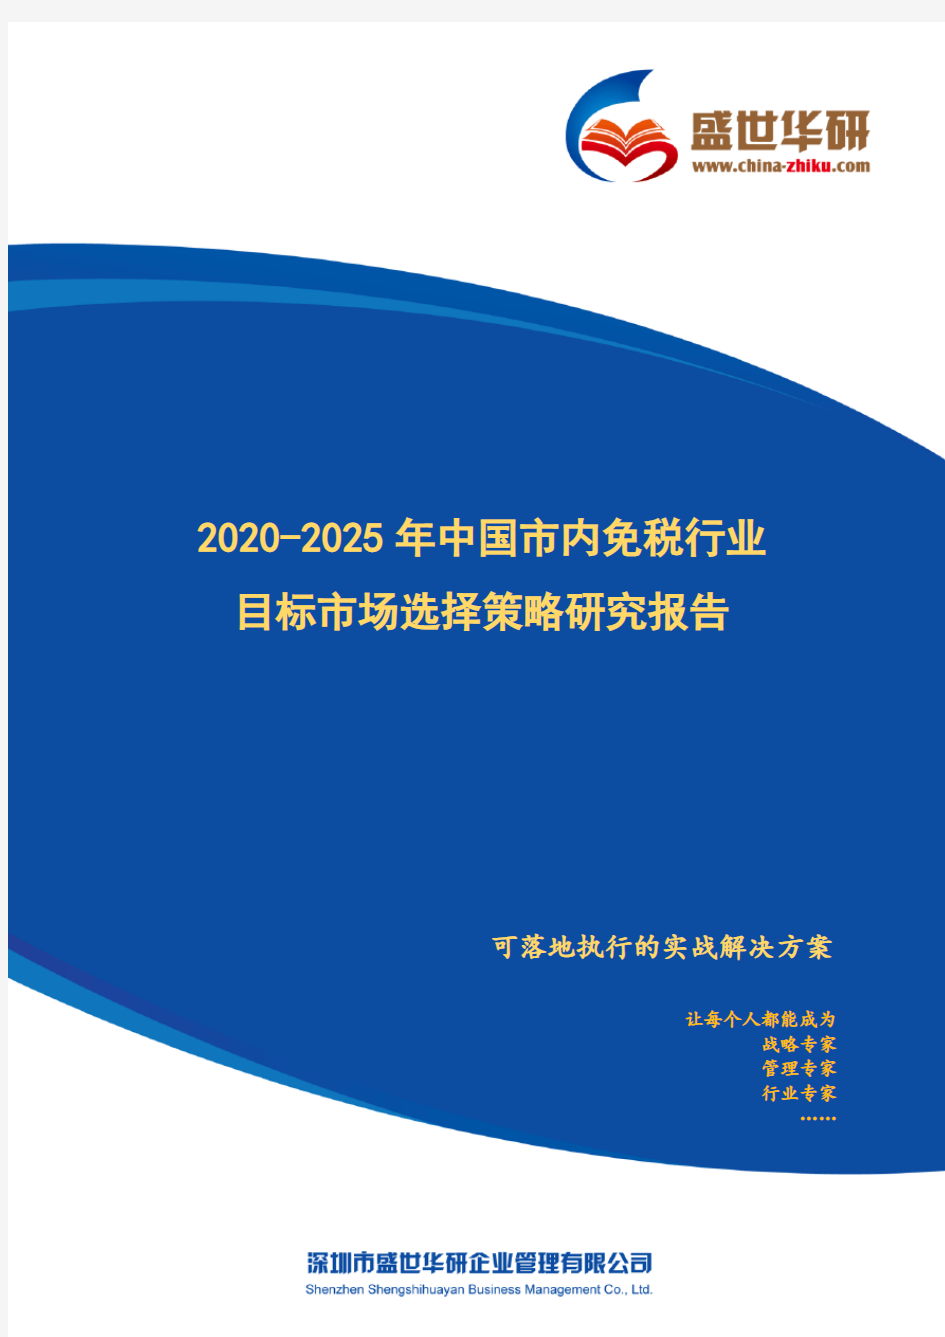 【完整版】2020-2025年中国市内免税行业目标市场选择策略研究报告